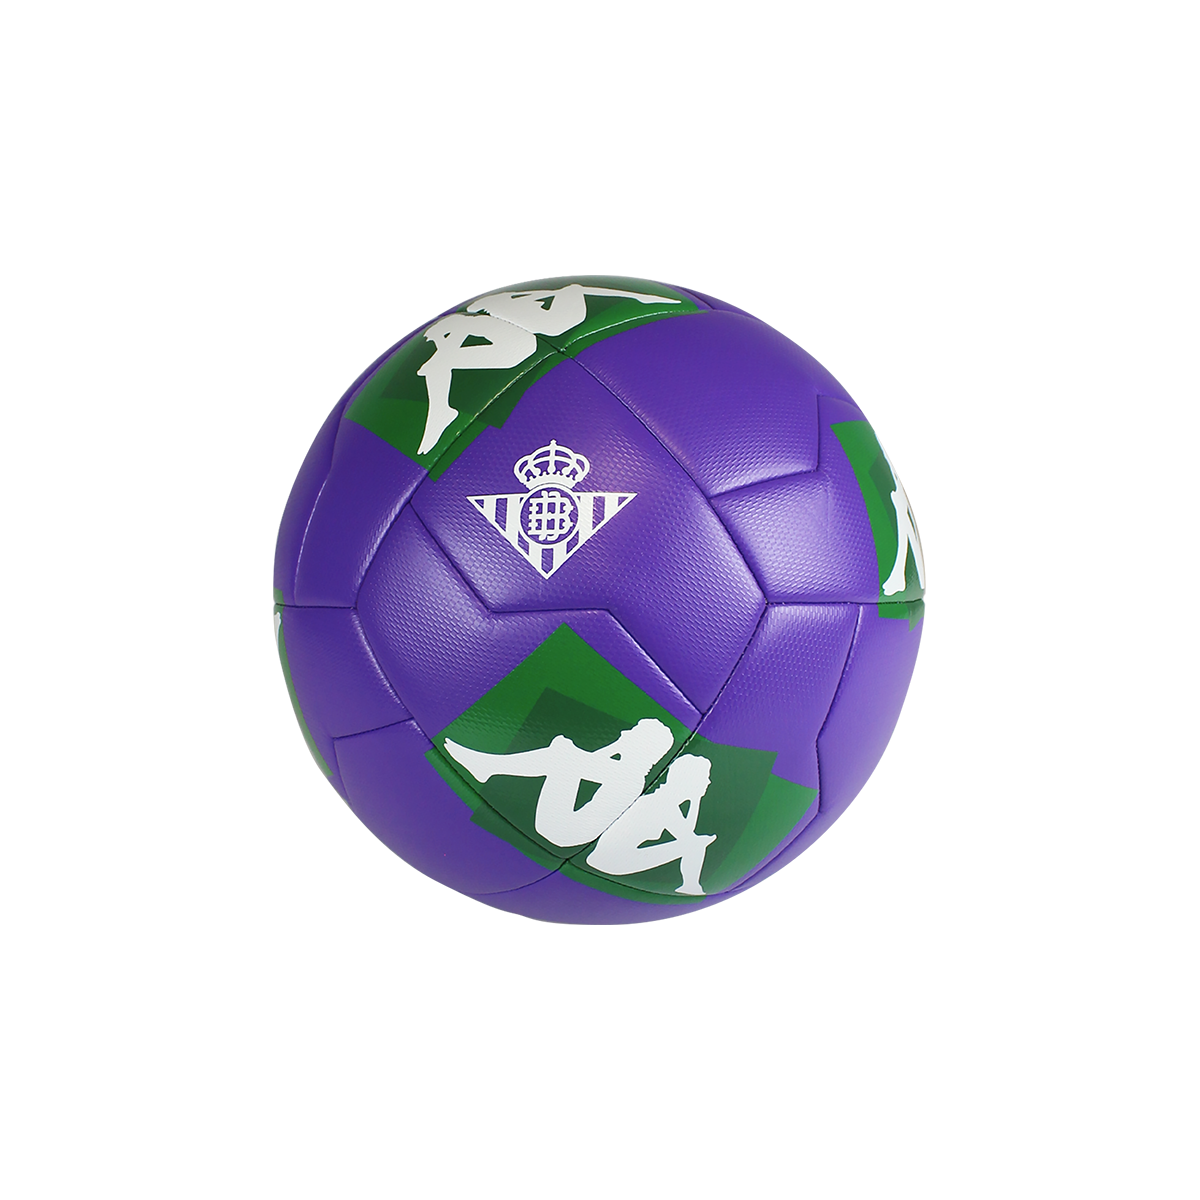 Balón de fútbol Player 20.3 Real Betis Balompié unisex Púrpura - Imagen 1